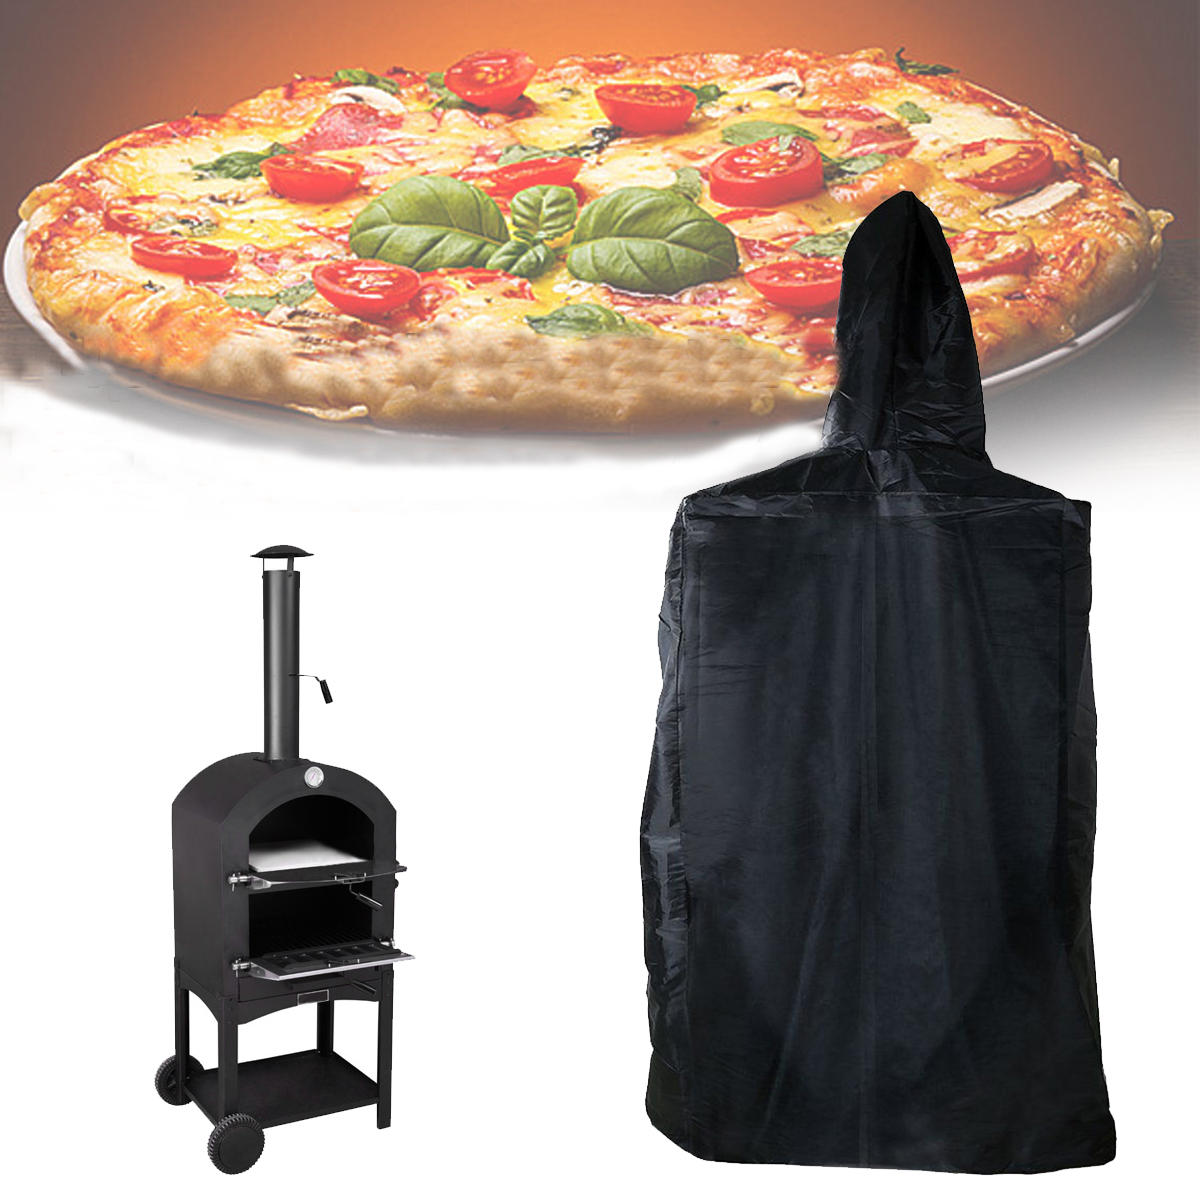 ürkçe: 160x37x50cm Dış Mekan Pizza Fırını Kapak Pişirme Sobası Su Geçirmez Toz Yağmur UV Koruyucu